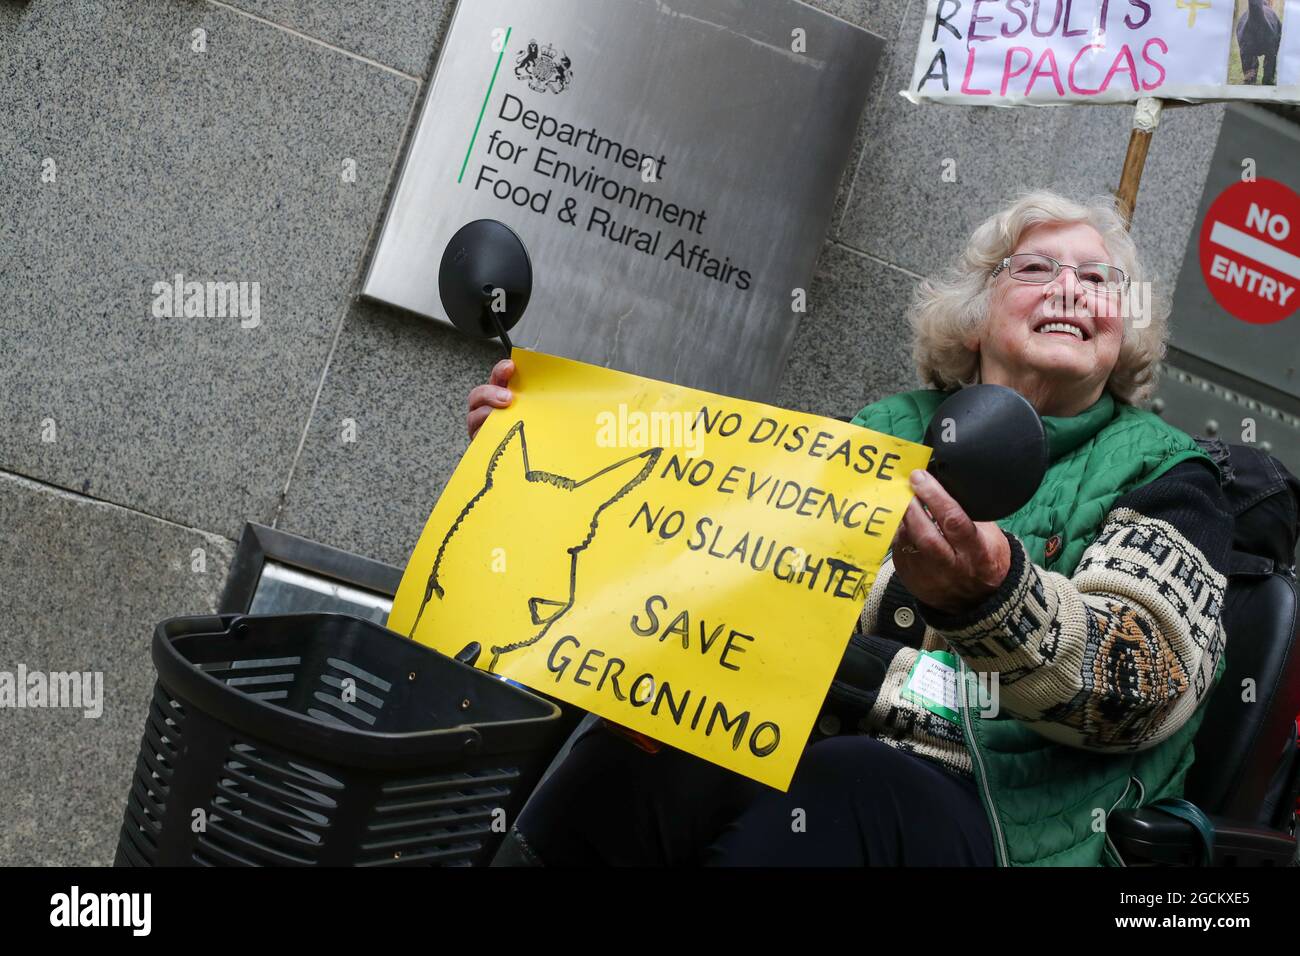 LONDRA, INGHILTERRA - 9 AGOSTO 2021, protesta contro Save Geronimo The Alpaca per essere stato estirpato al di fuori del Dipartimento di ambiente, cibo e affari rurali, a Londra Foto Stock